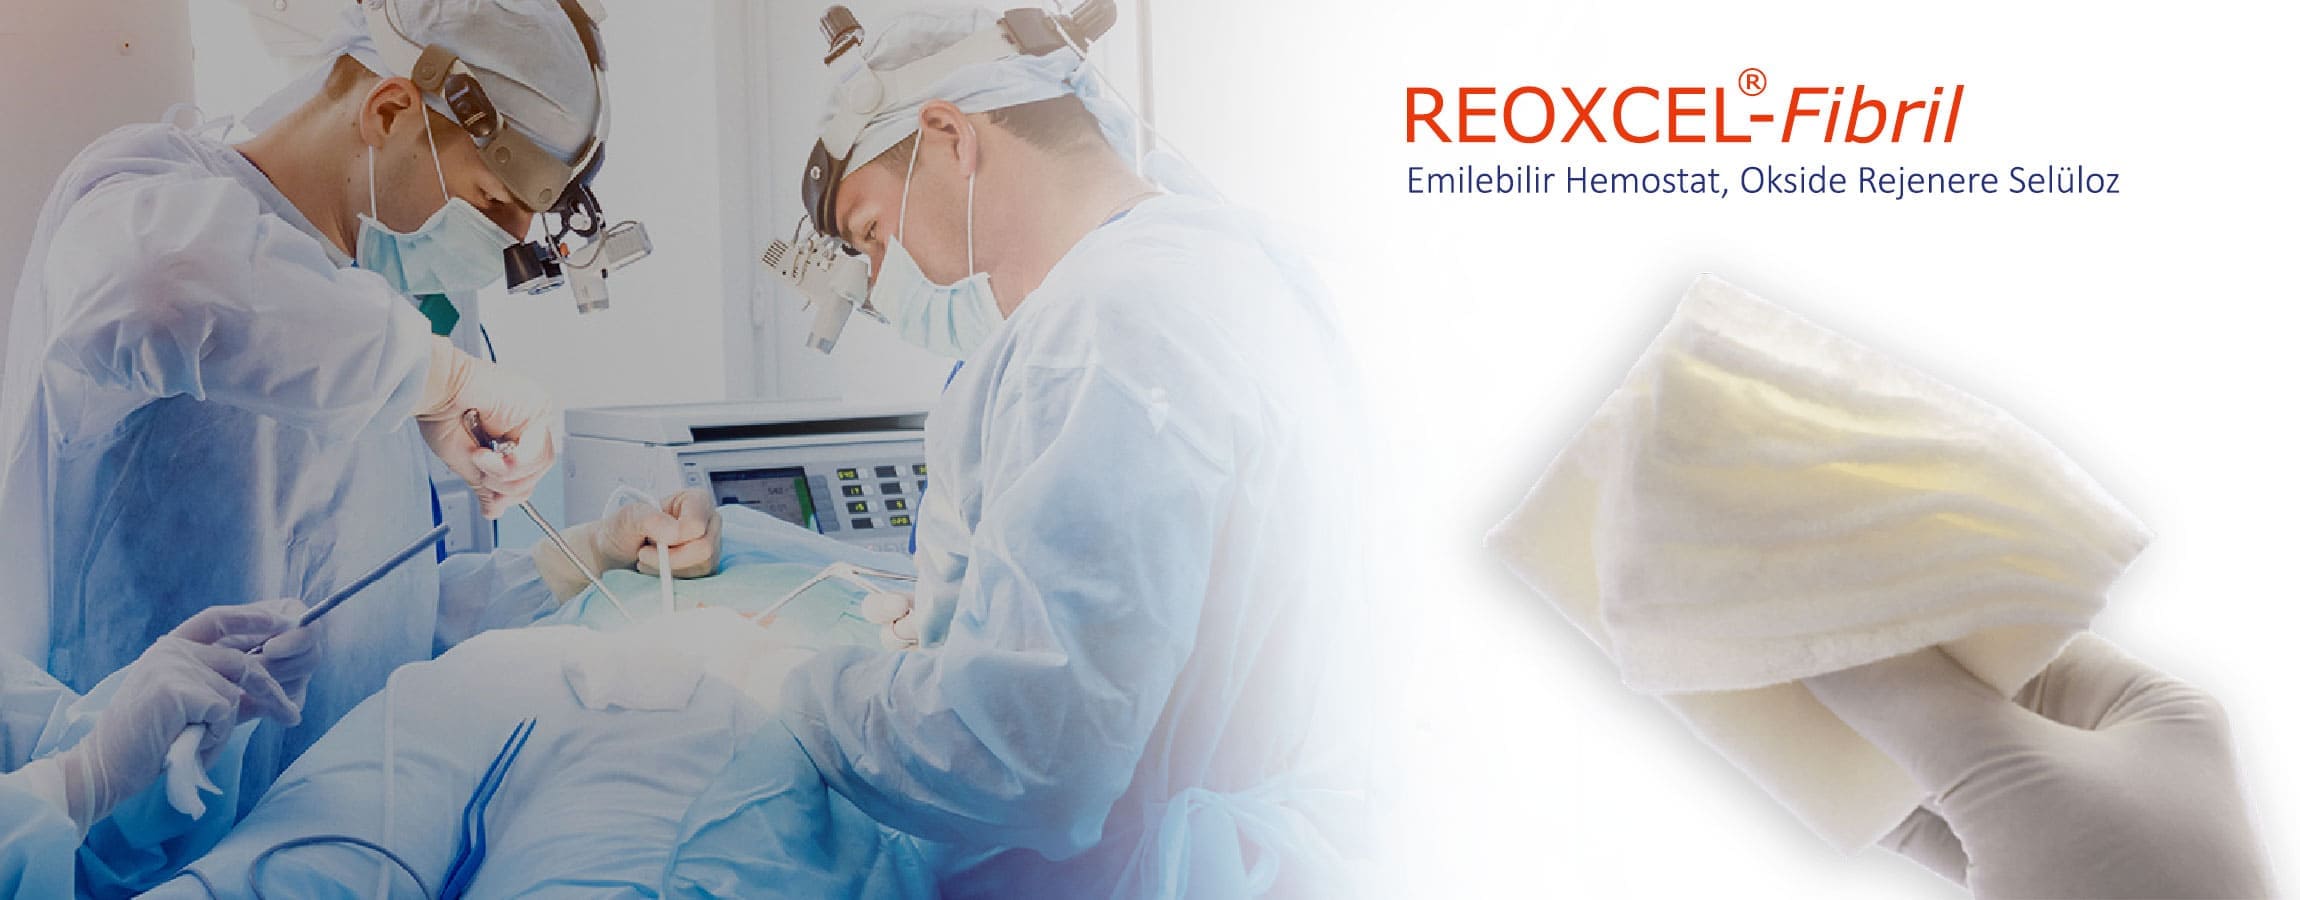 Genel Cerrahide Reoxcel Fibril Hemostat Kullanımı